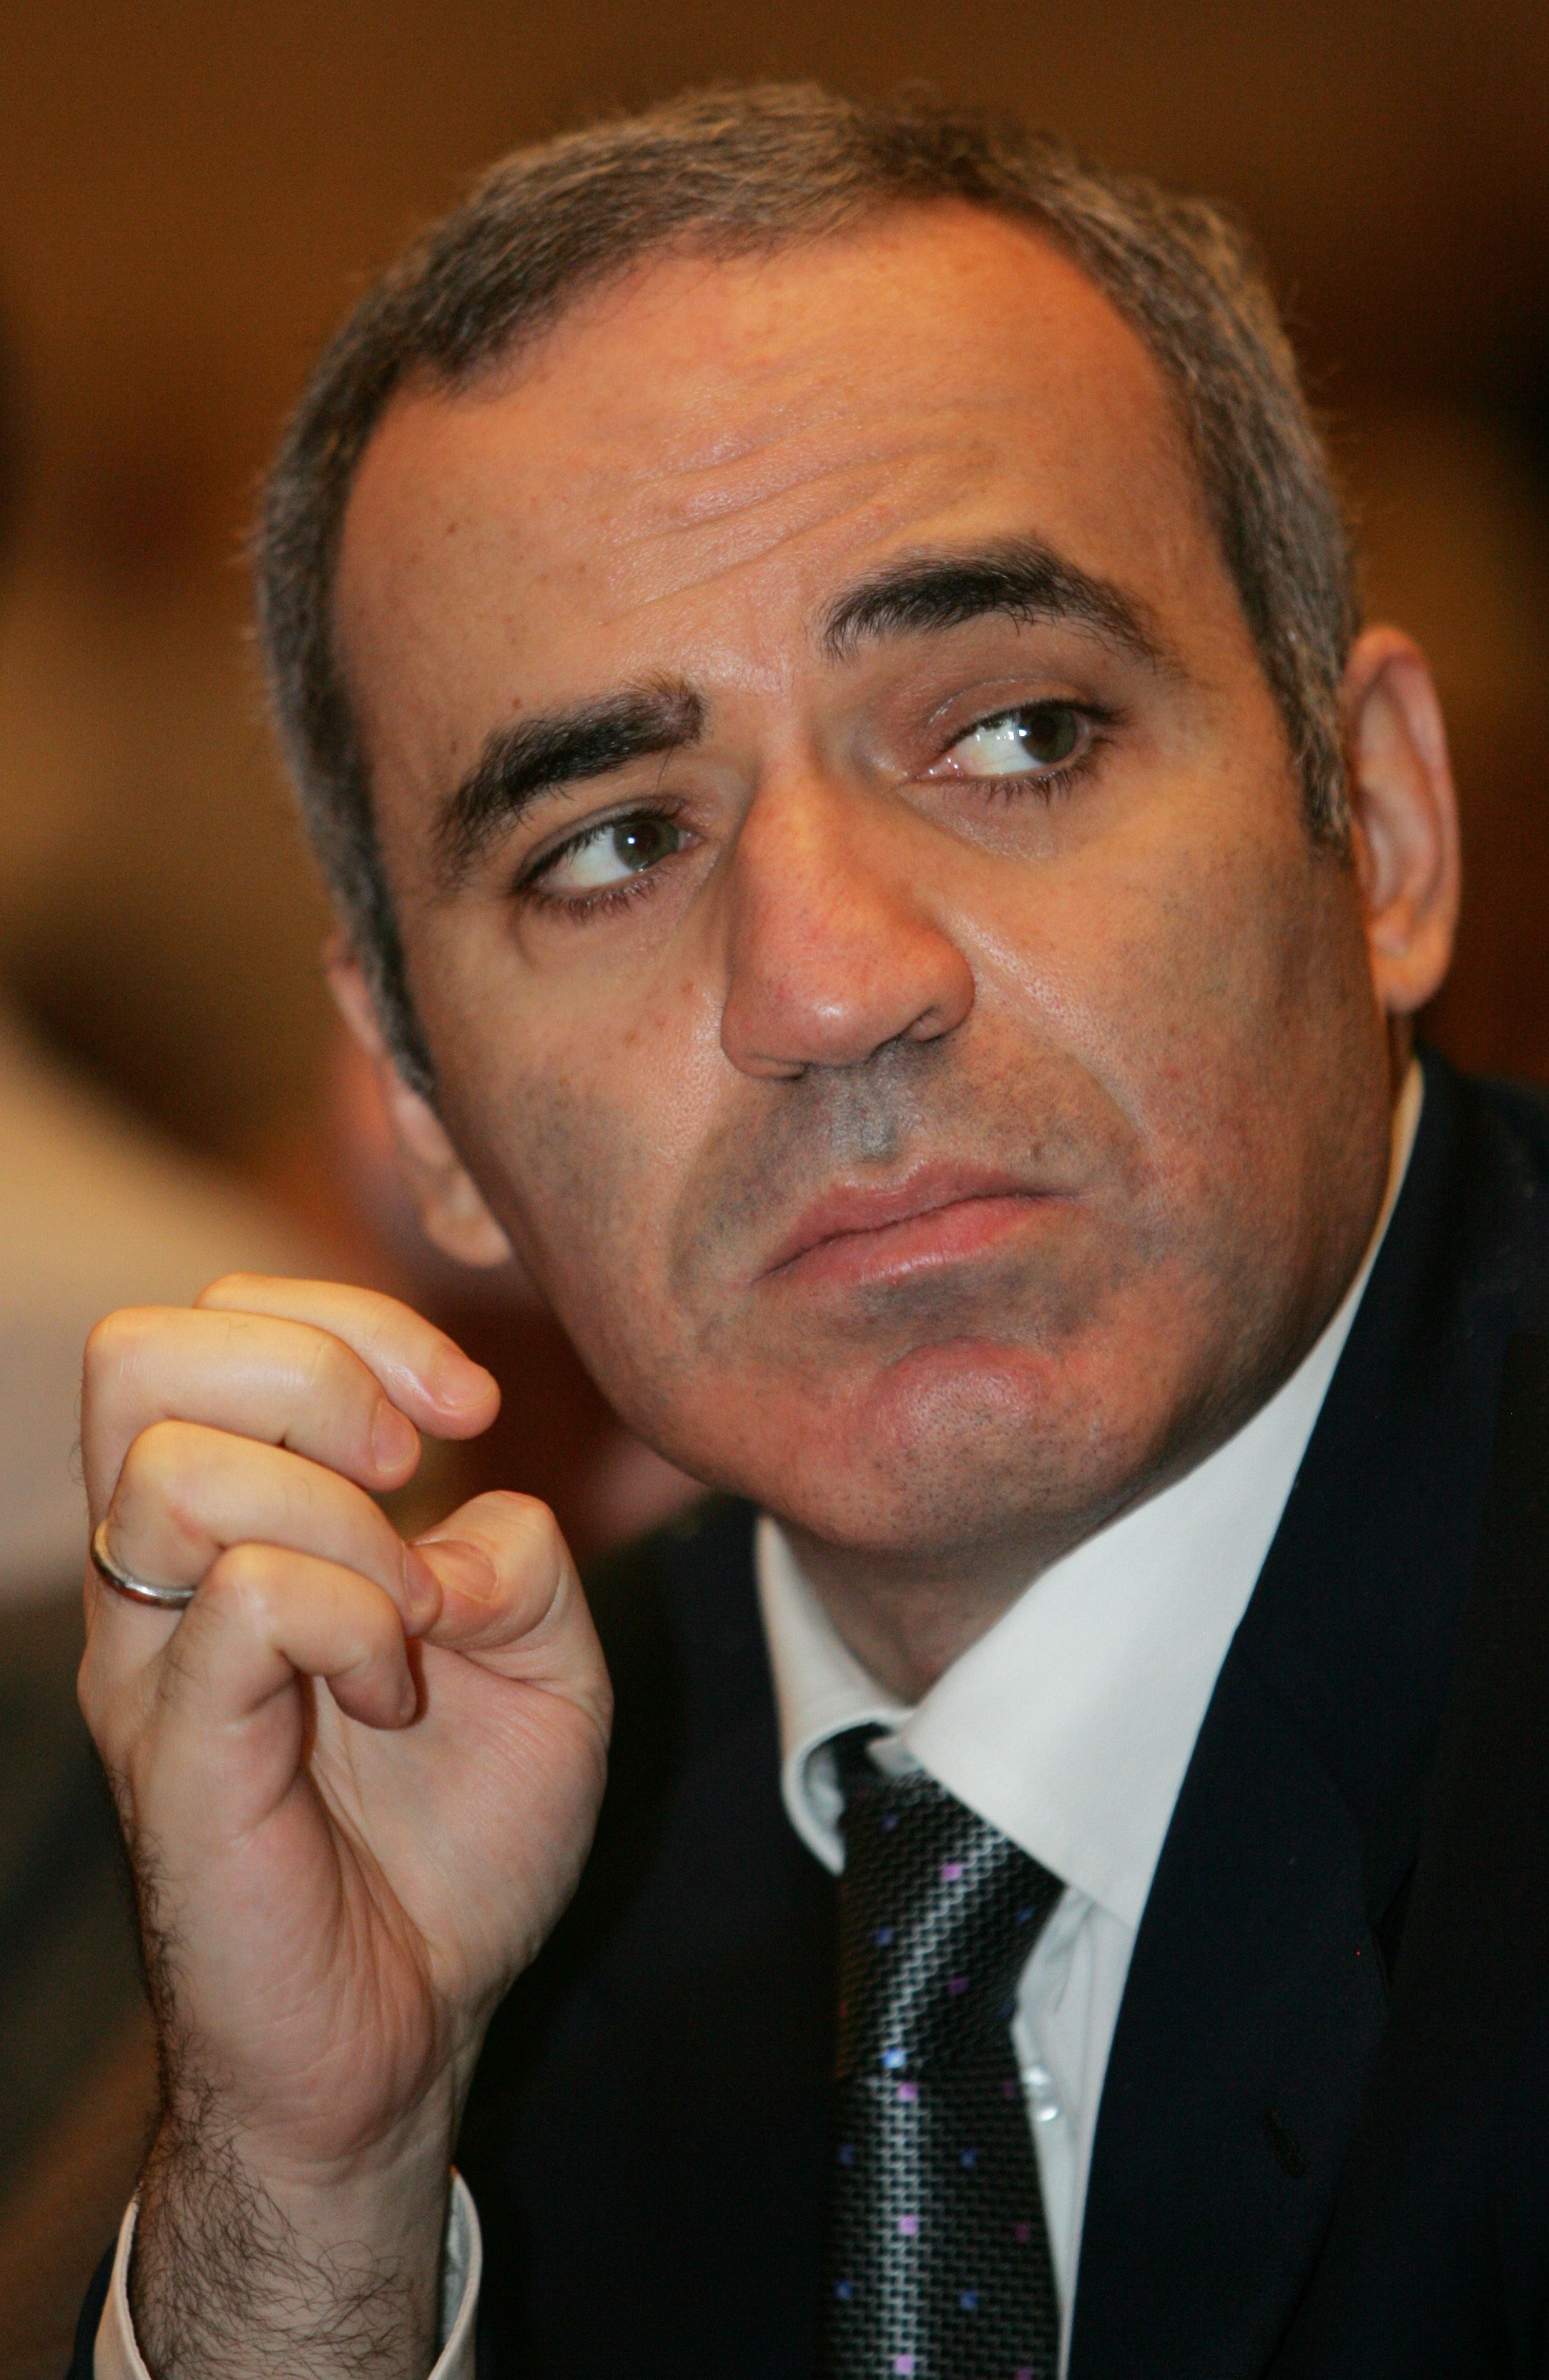 Curso completo de Garry Kasparov 